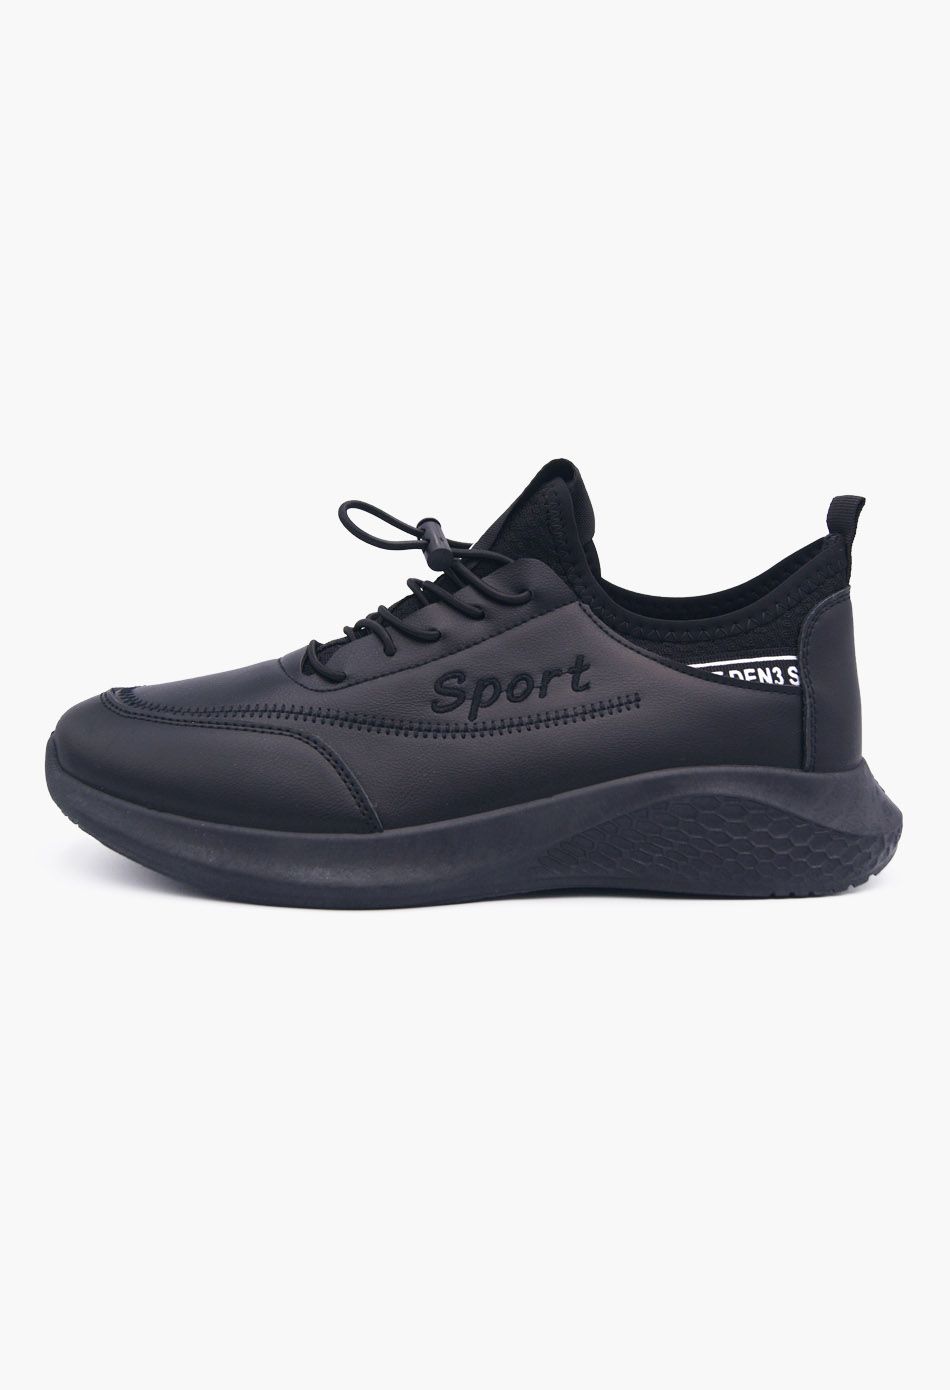 Ανδρικά Αθλητικά Παπούτσια για Τρέξιμο Μαύρο / 9996-black ΑΘΛΗΤΙΚΑ & SNEAKERS joya.gr